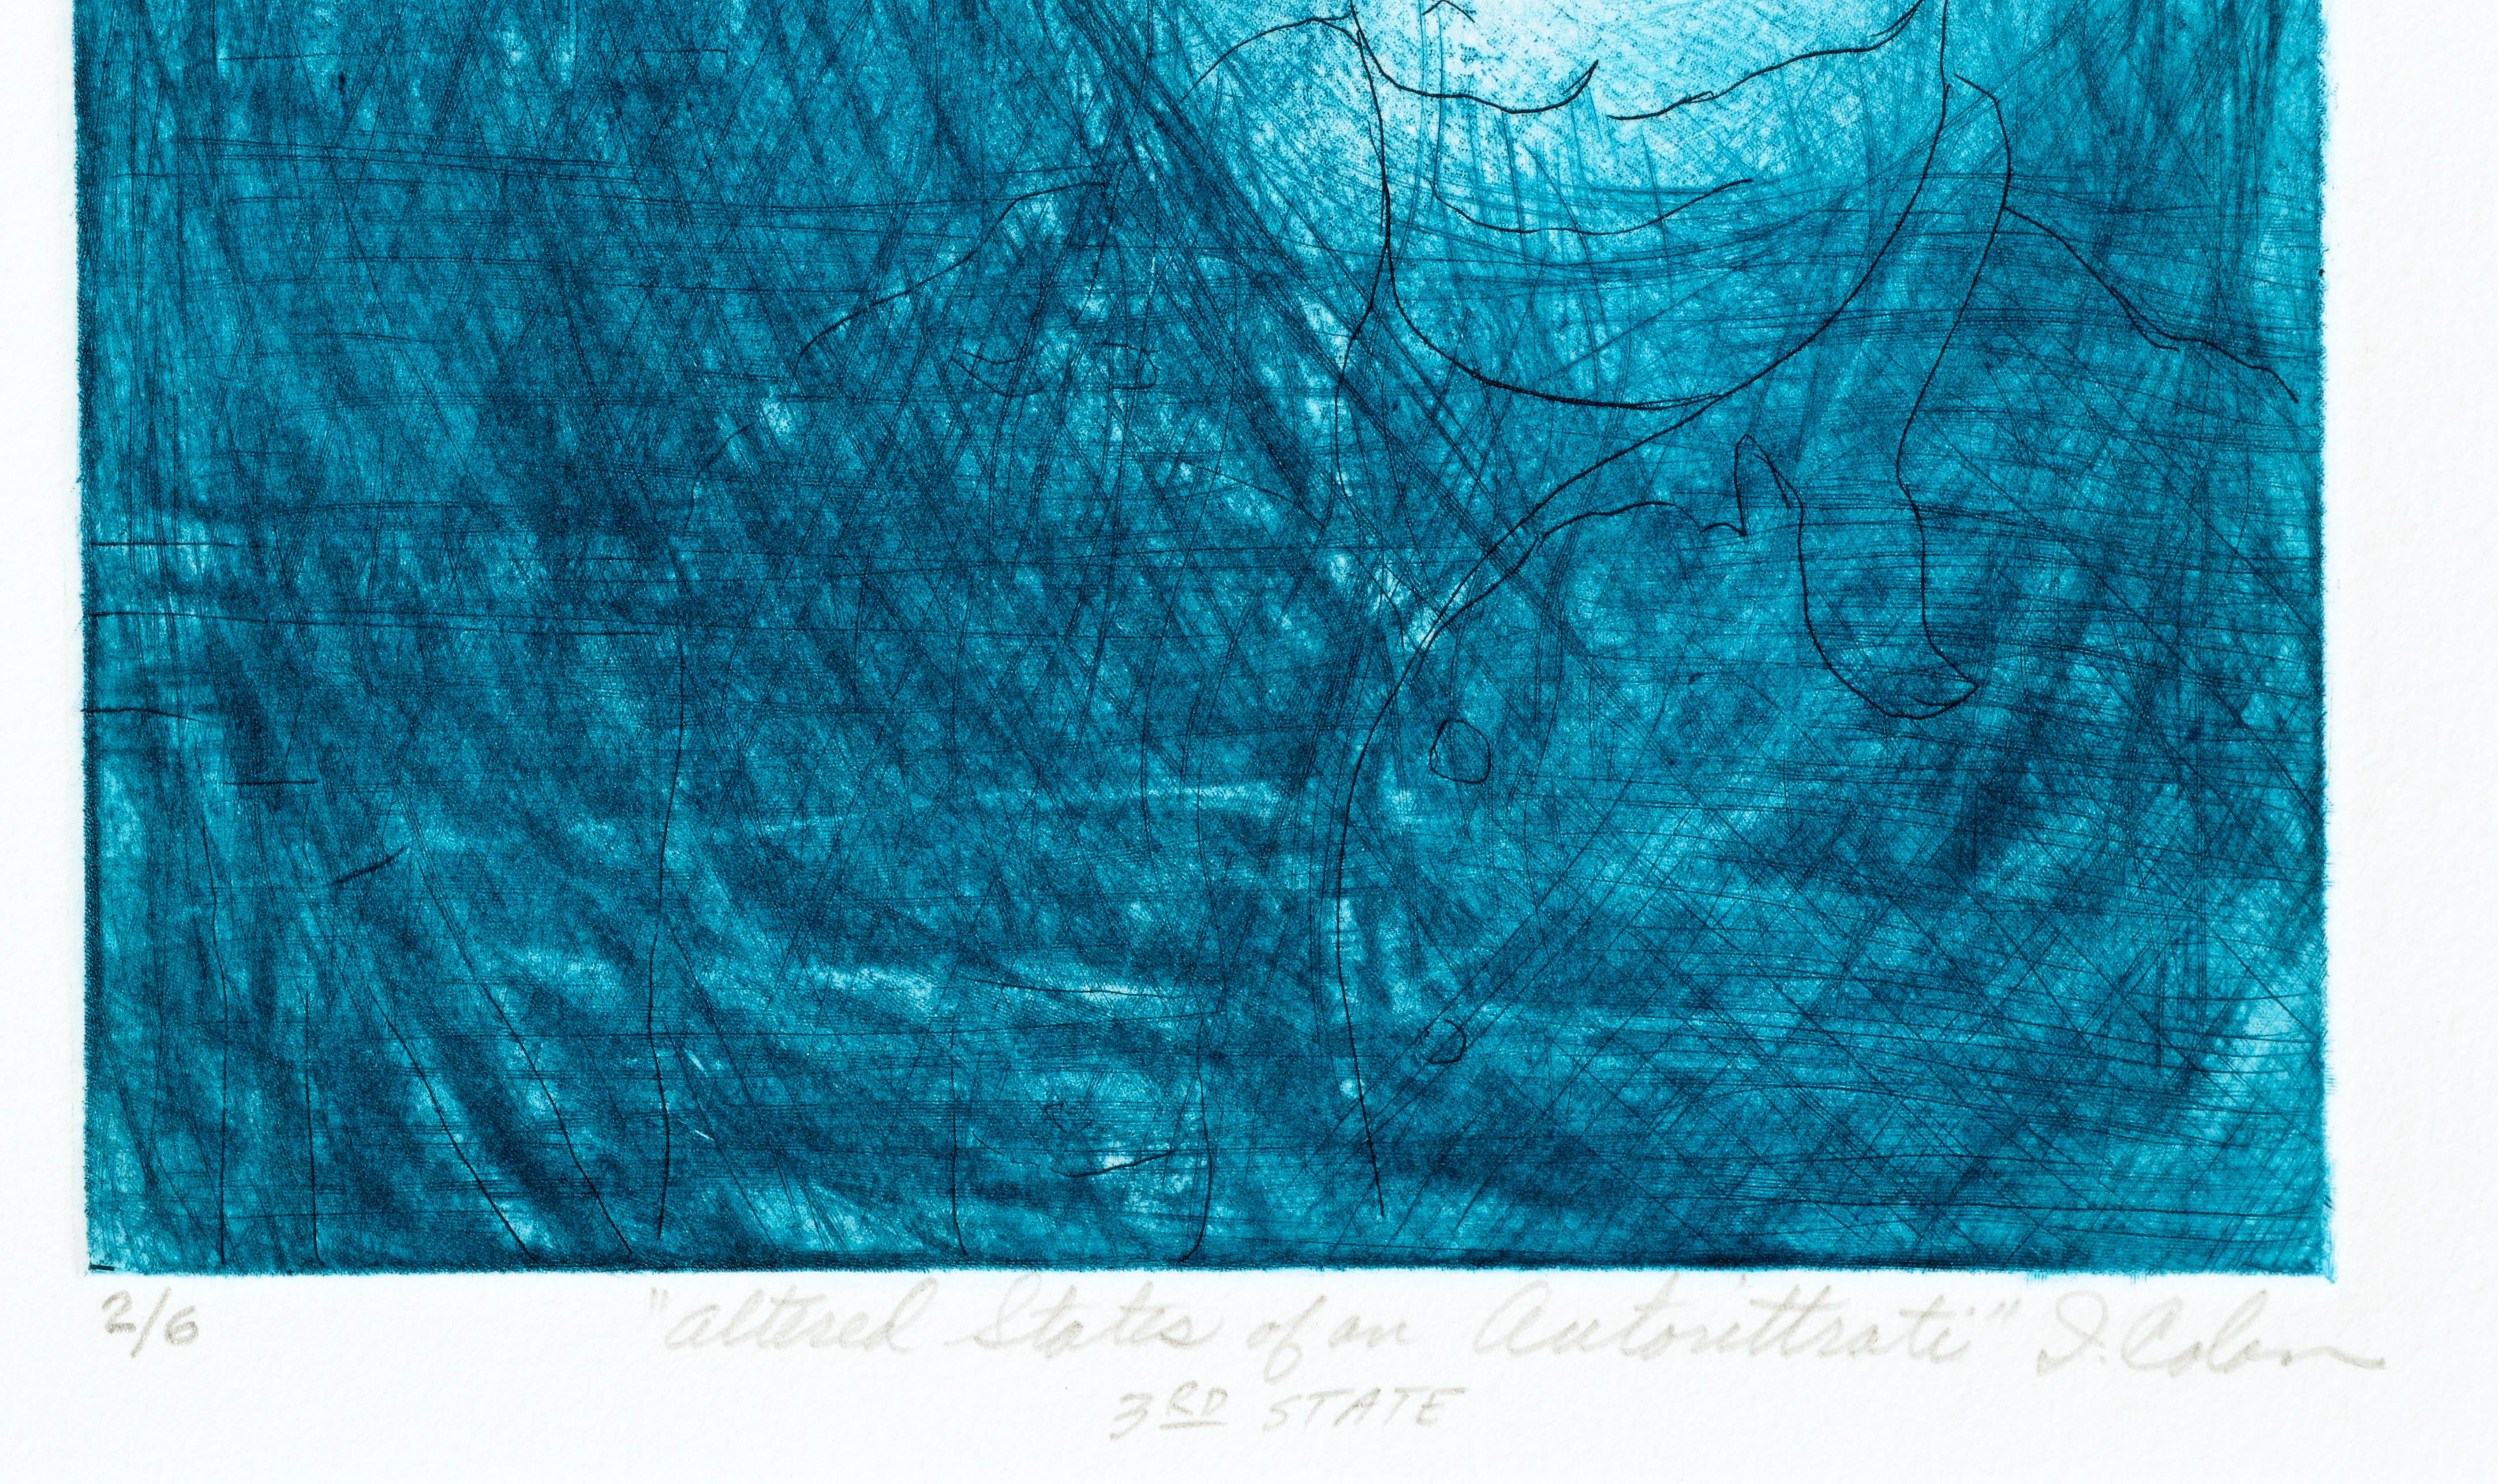 Kühnes modernistisches Selbstporträt in Blau, eine Lithografie des kalifornischen Künstlers I. Colon (20. Jahrhundert). Nummeriert, betitelt und signiert am unteren Rand (